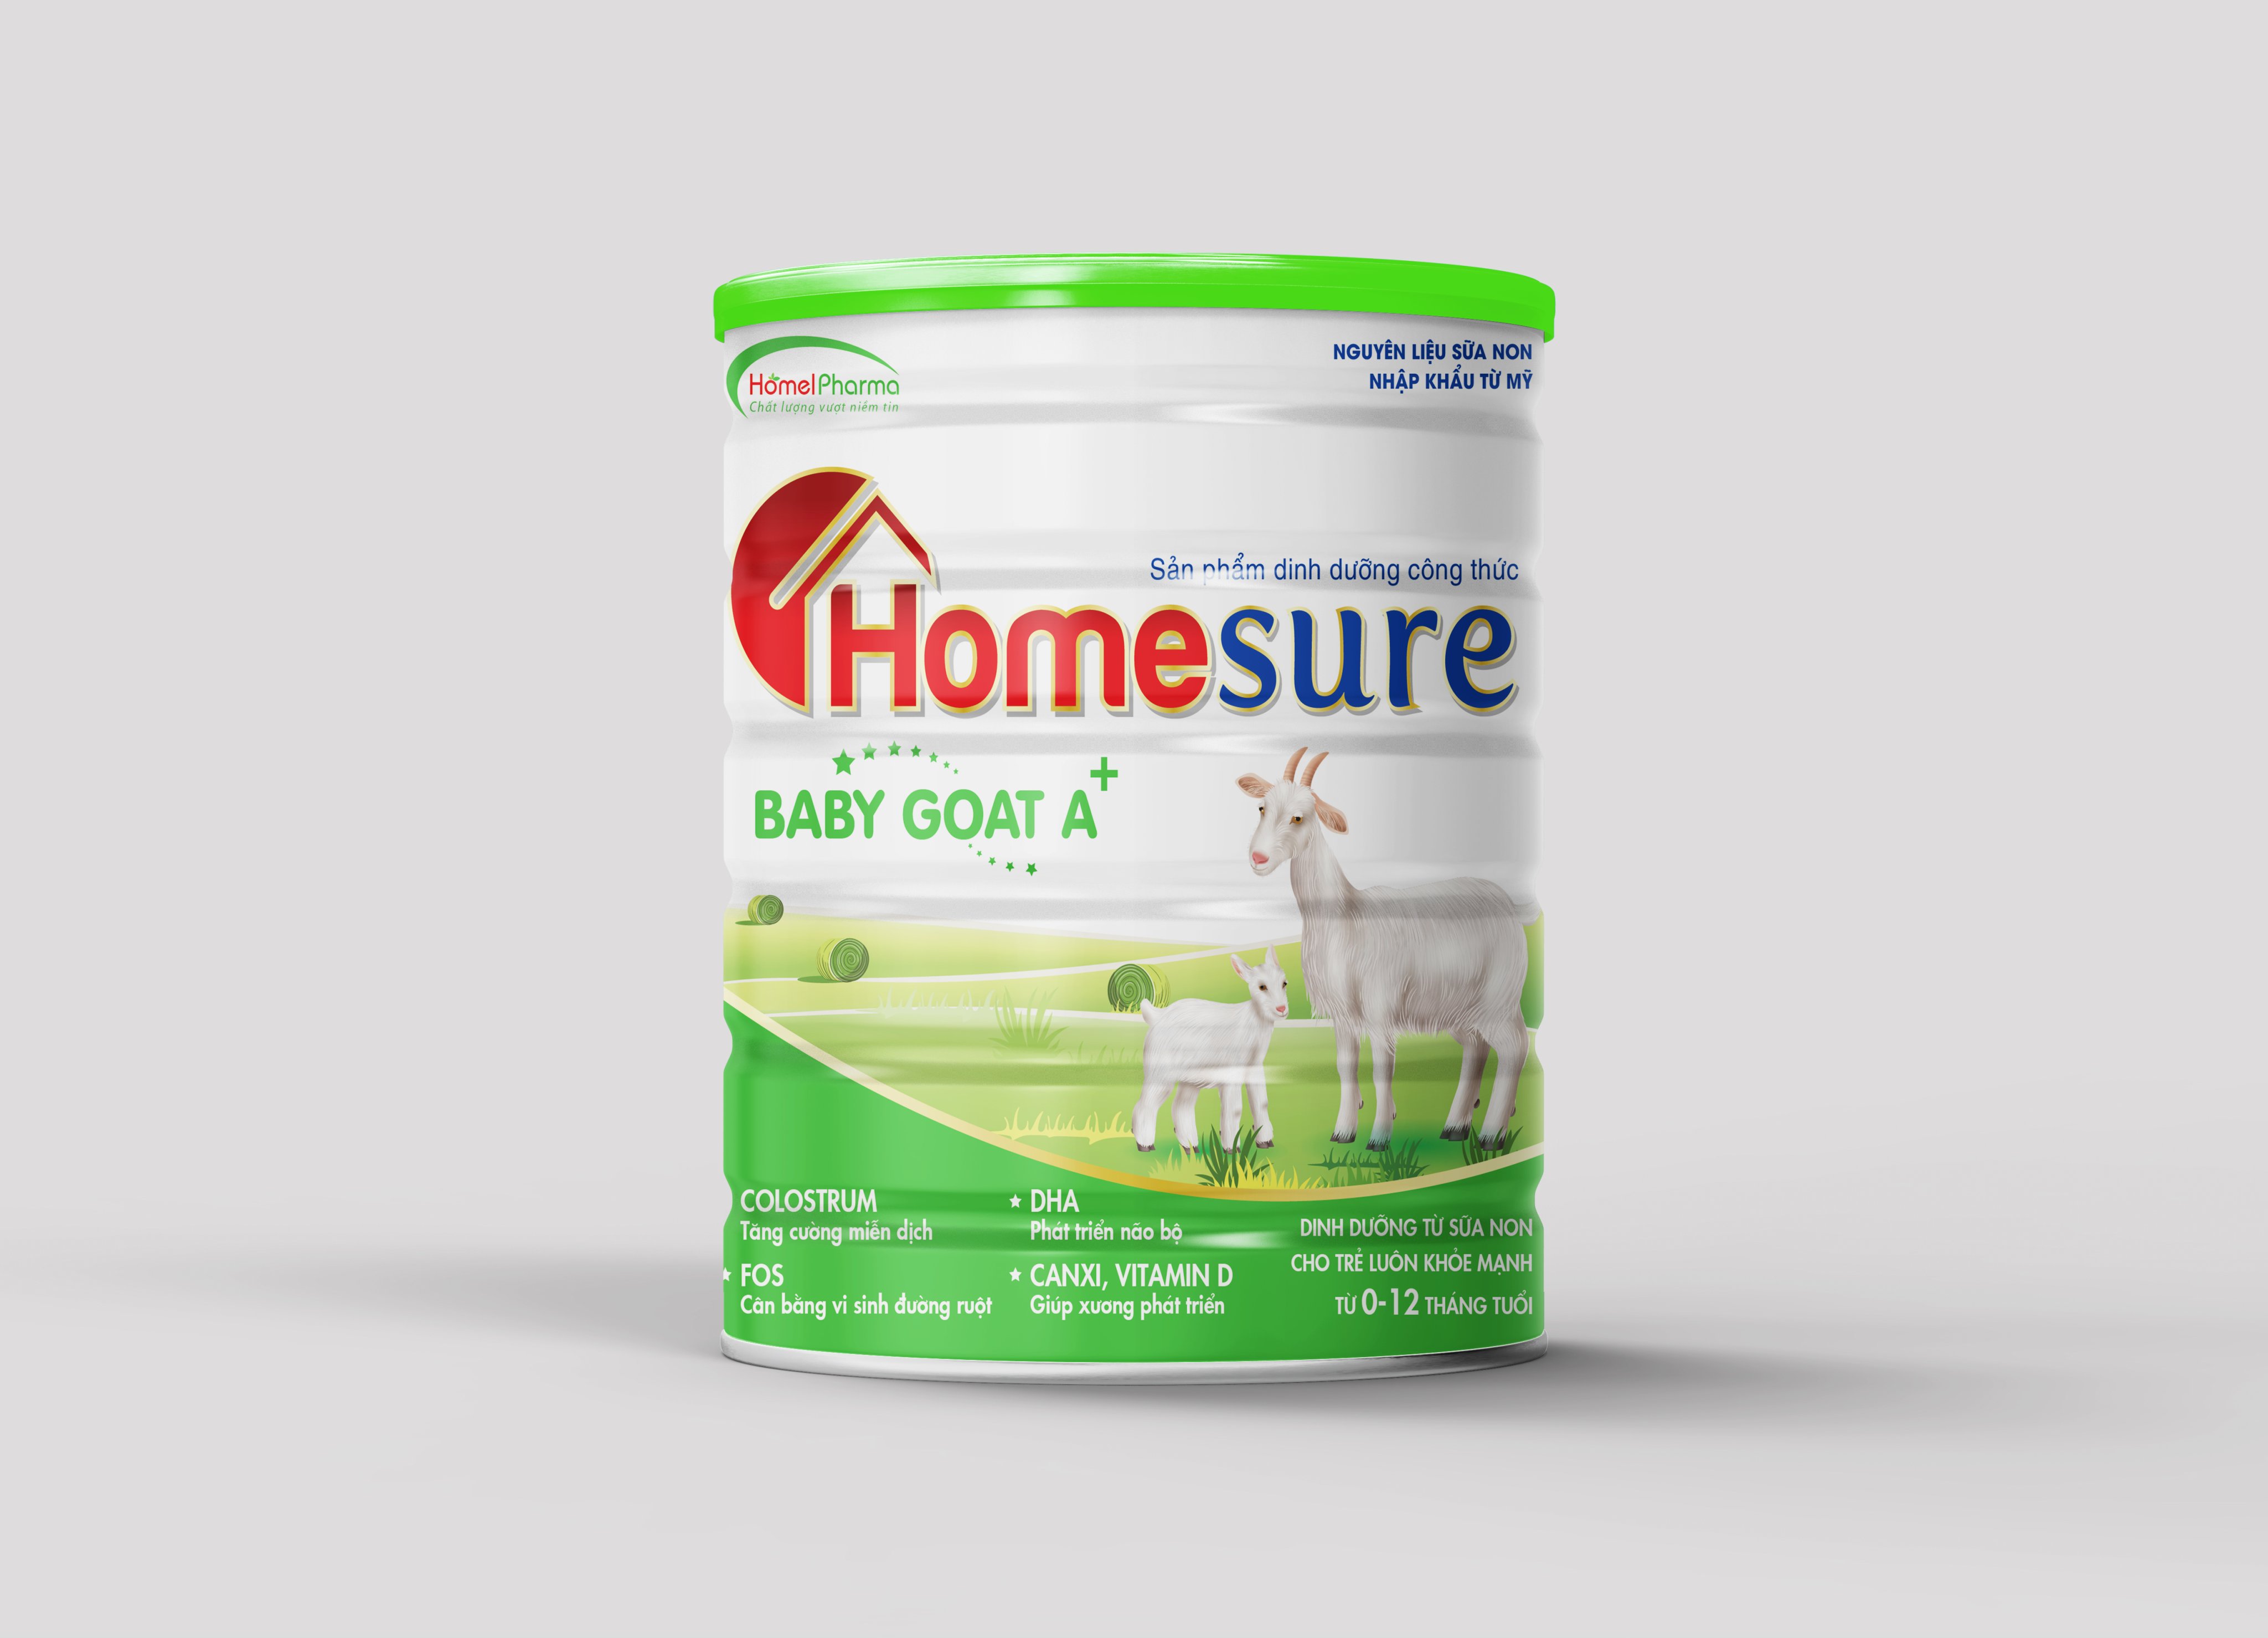 Homesure Baby Goat - Sữa Dê Dành Cho Bé Từ 0-12 Tháng Tuổi